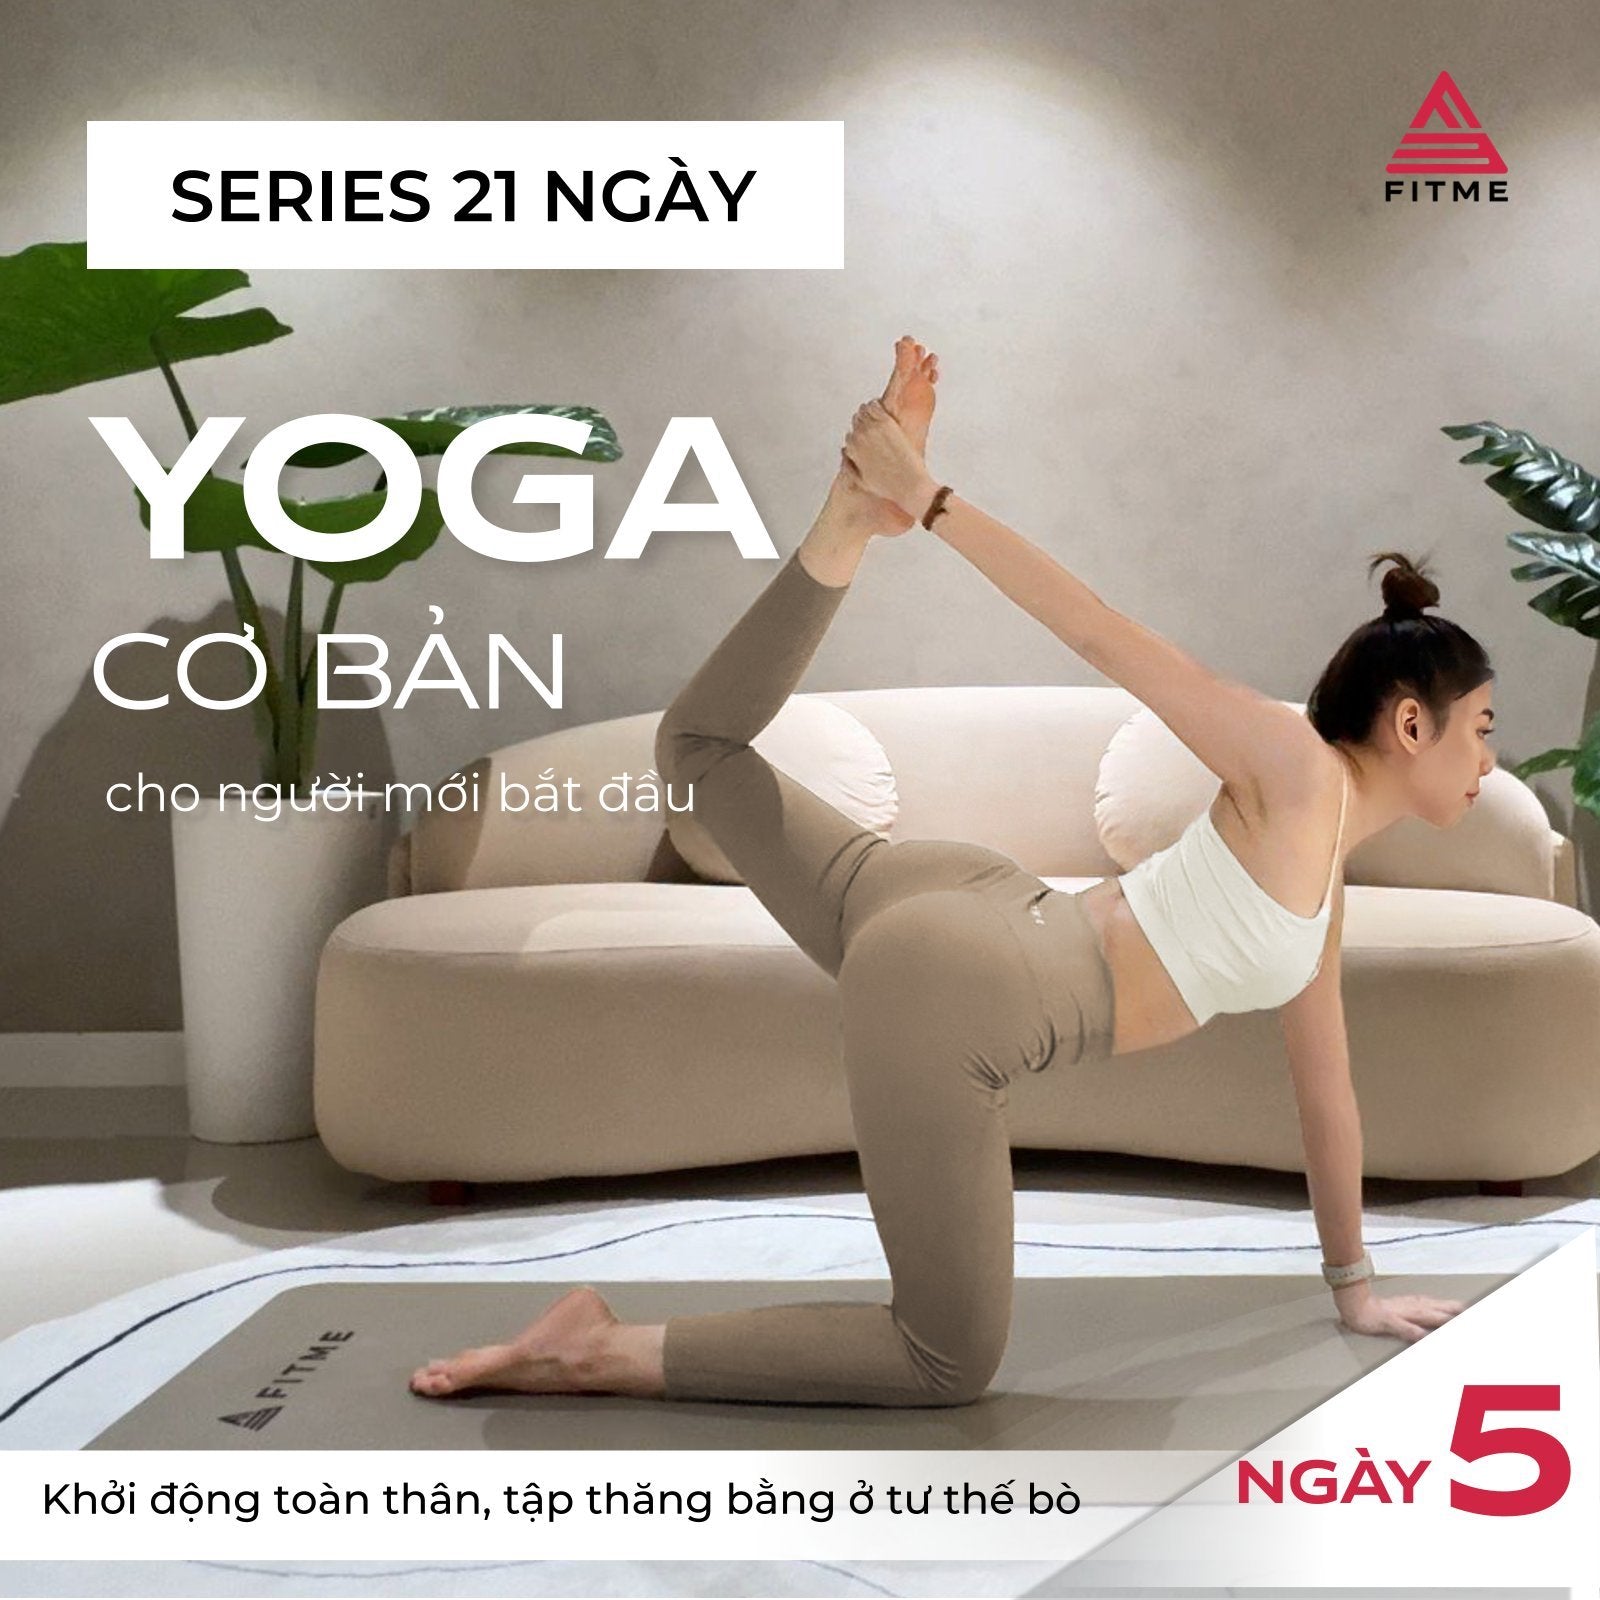 Ngày 5: Khởi động toàn thân ở tư thế ngồi, tập thăng bằng ở tư thế bò - Series 21 ngày yoga cơ bản